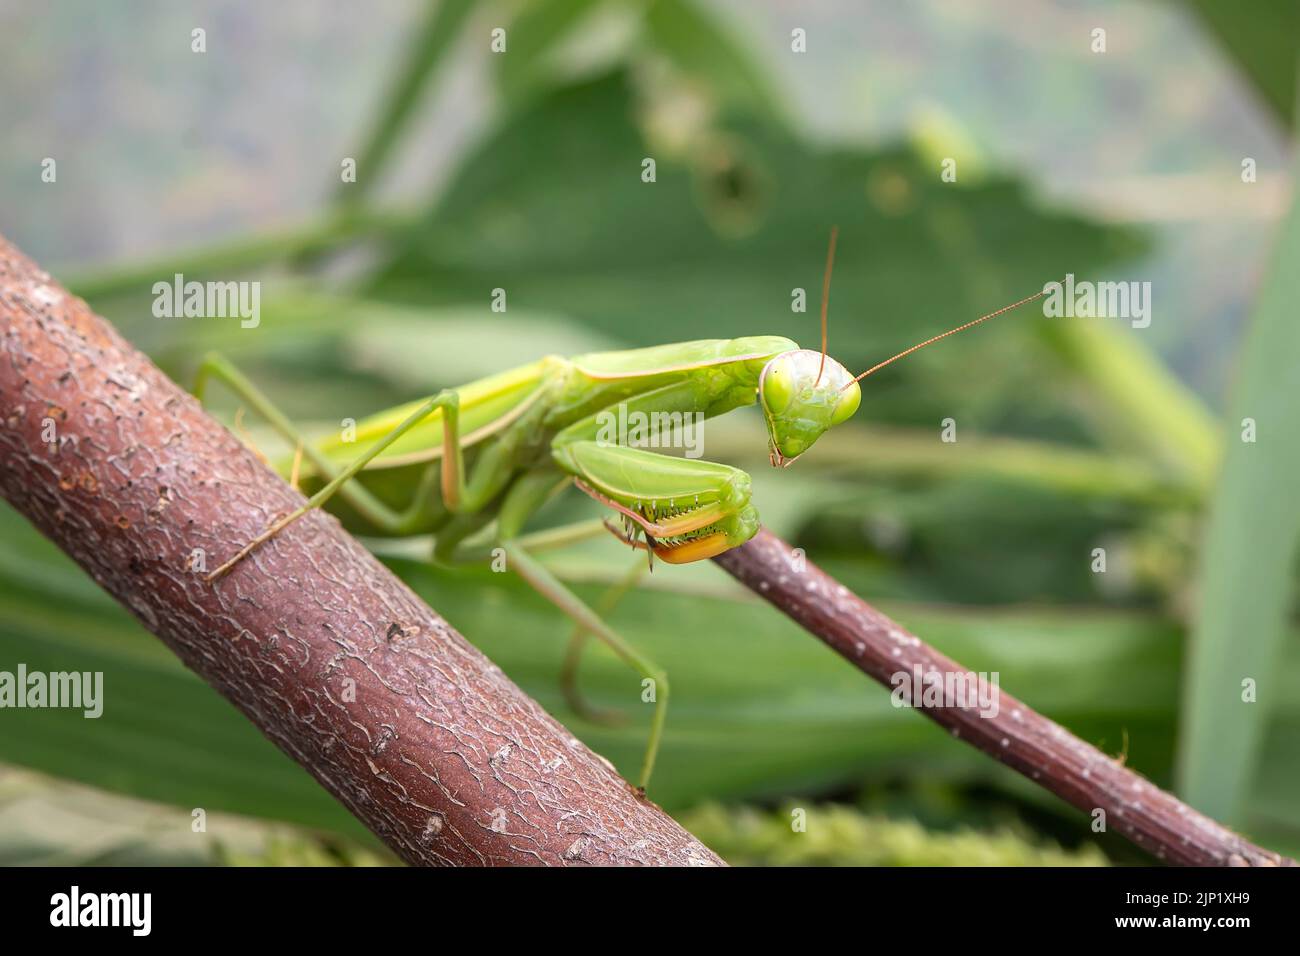 Mantis der Familie Sphodromantis sitzt auf einem Ast, der auf dem grünen Blatt lauert. Sphodromantis viridis als Haustier. Zu den gebräuchlichen Namen gehören afrikanische Gottesanbeterin, g Stockfoto